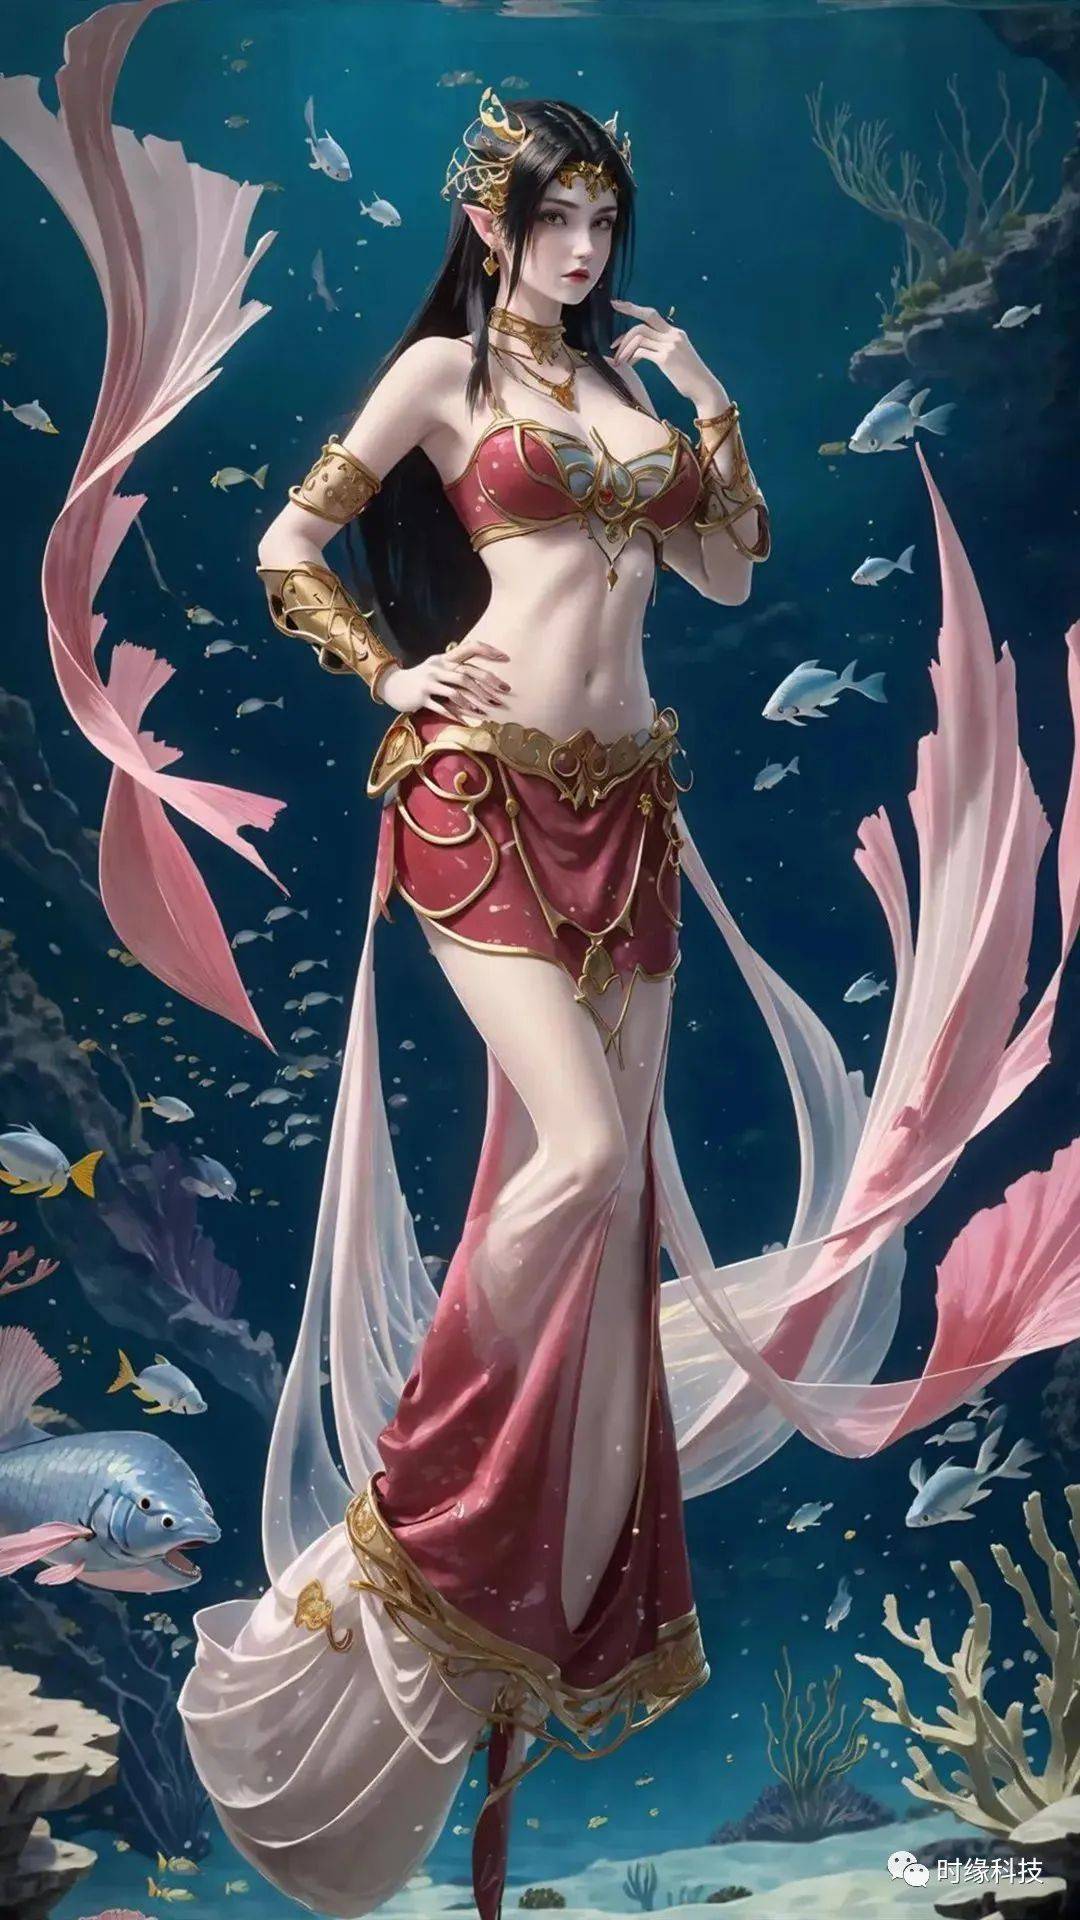 斗破苍穹:人鱼公主美杜莎!人类与海族的混血后裔